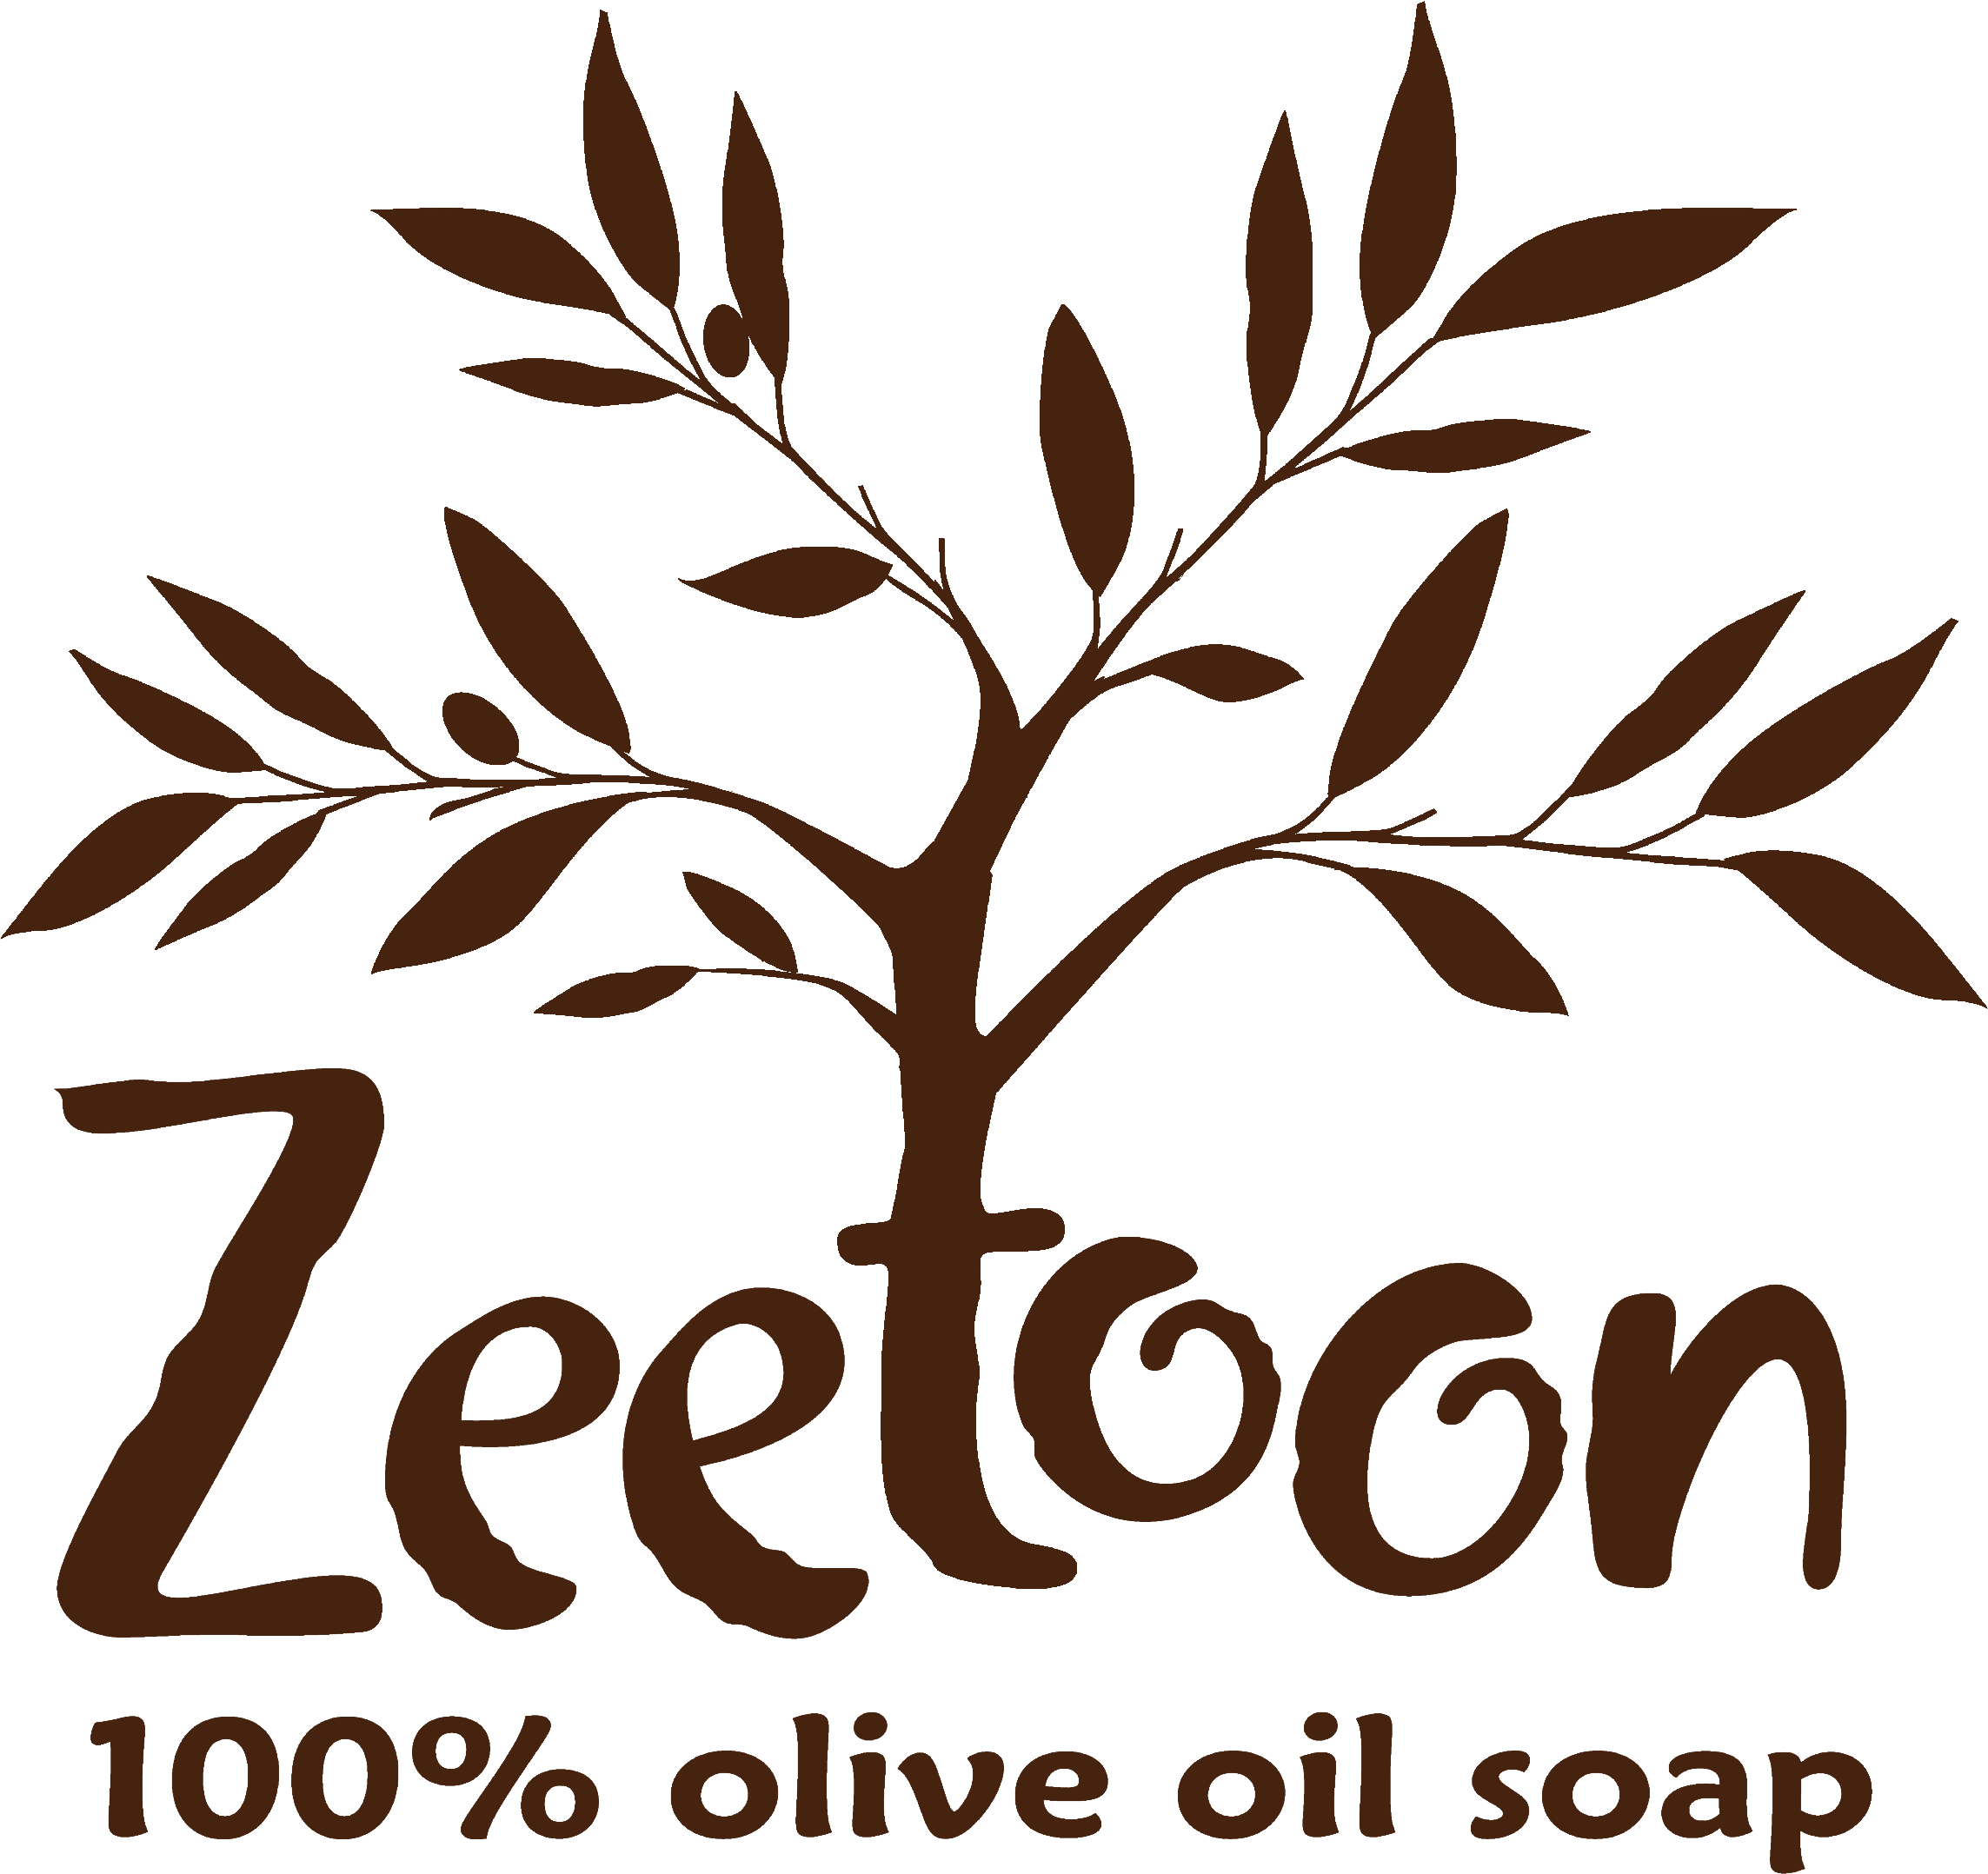 Zeetoon 100% Olive Oil Soap